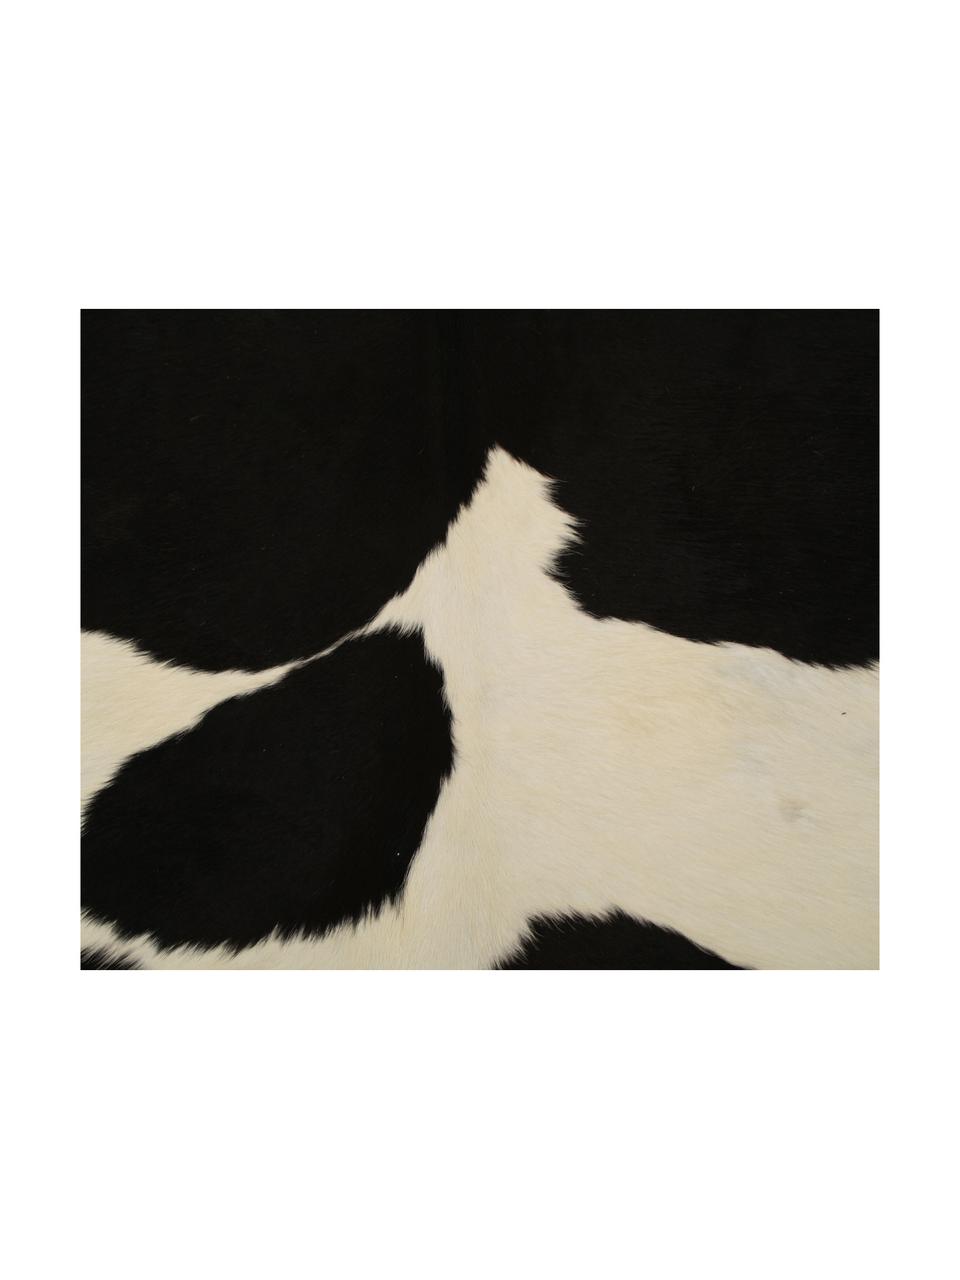 Tappeto in pelle di mucca Virgo, Pelle di mucca, Nero, bianco, Pelle di mucca unica 969, 160 x 180 cm